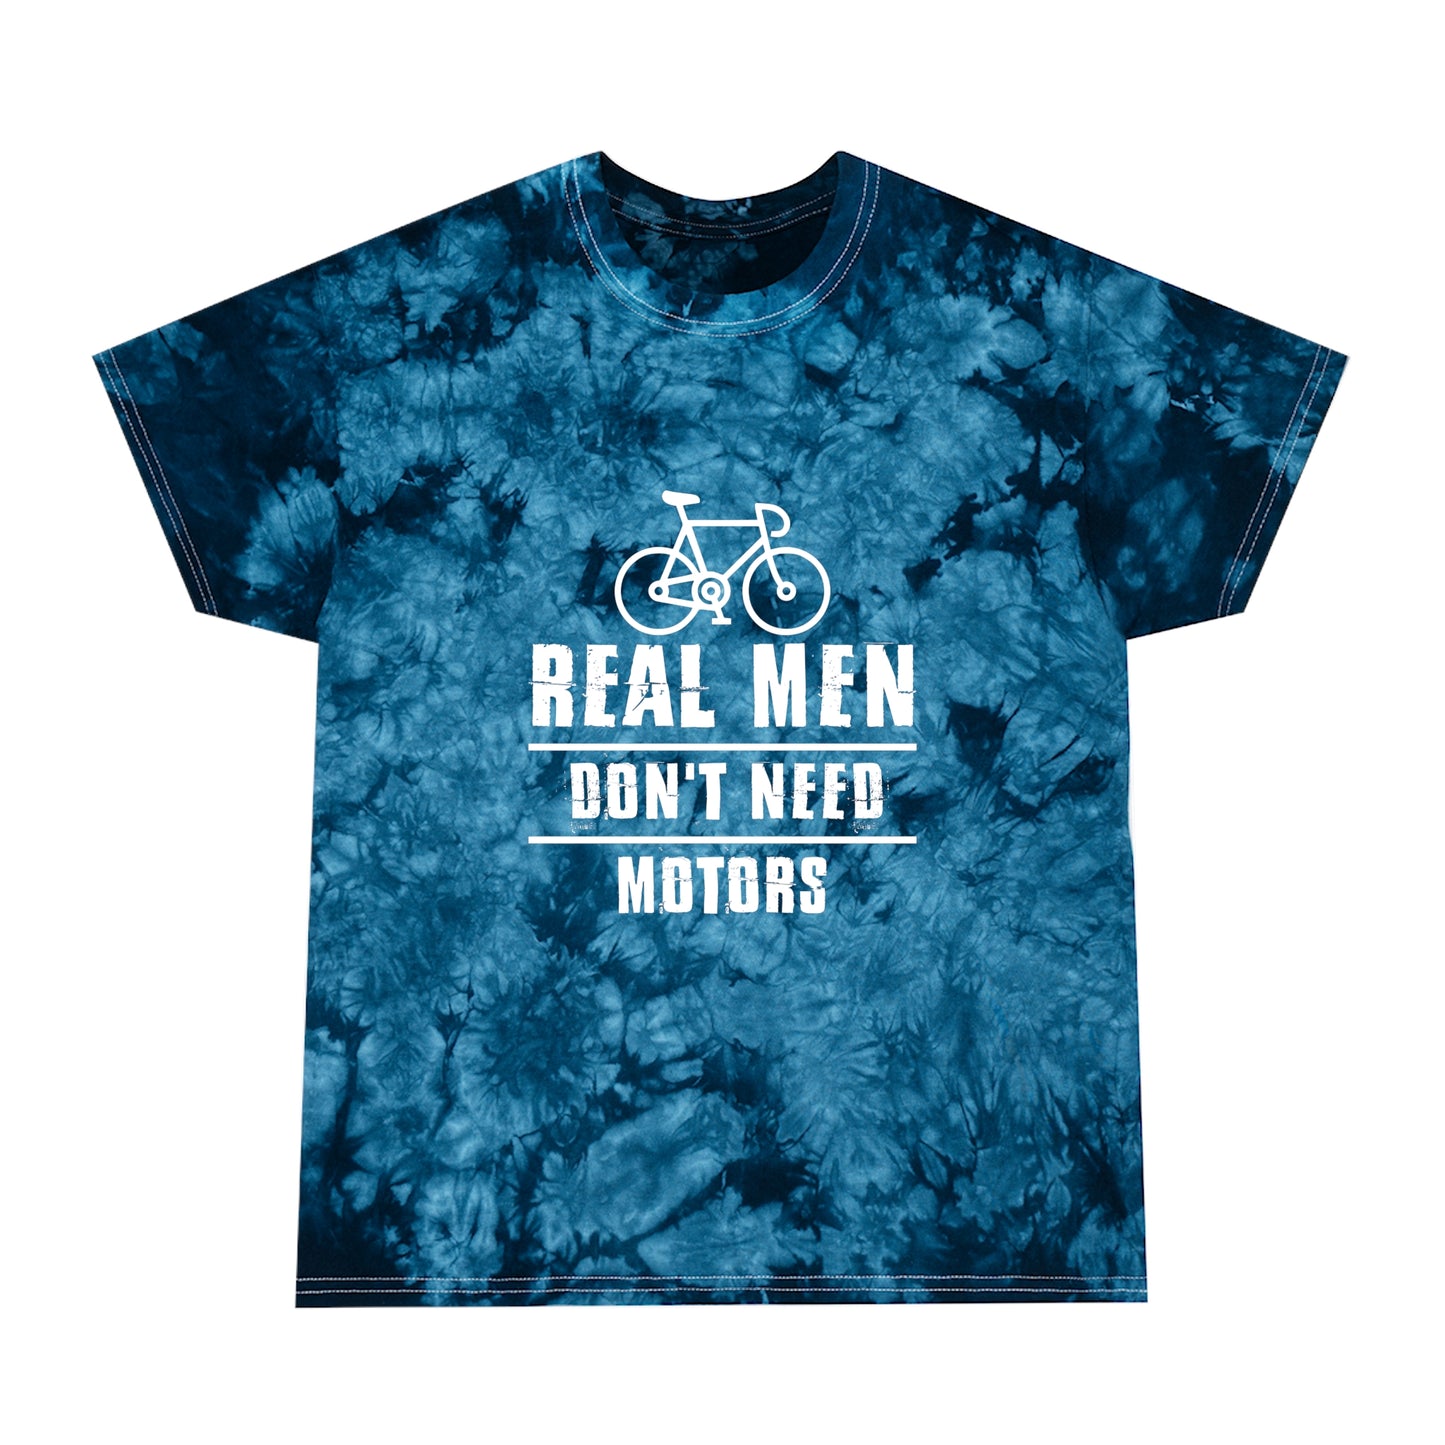 Real Men Don't Need Motors Tie-Dye Tee, Crystal